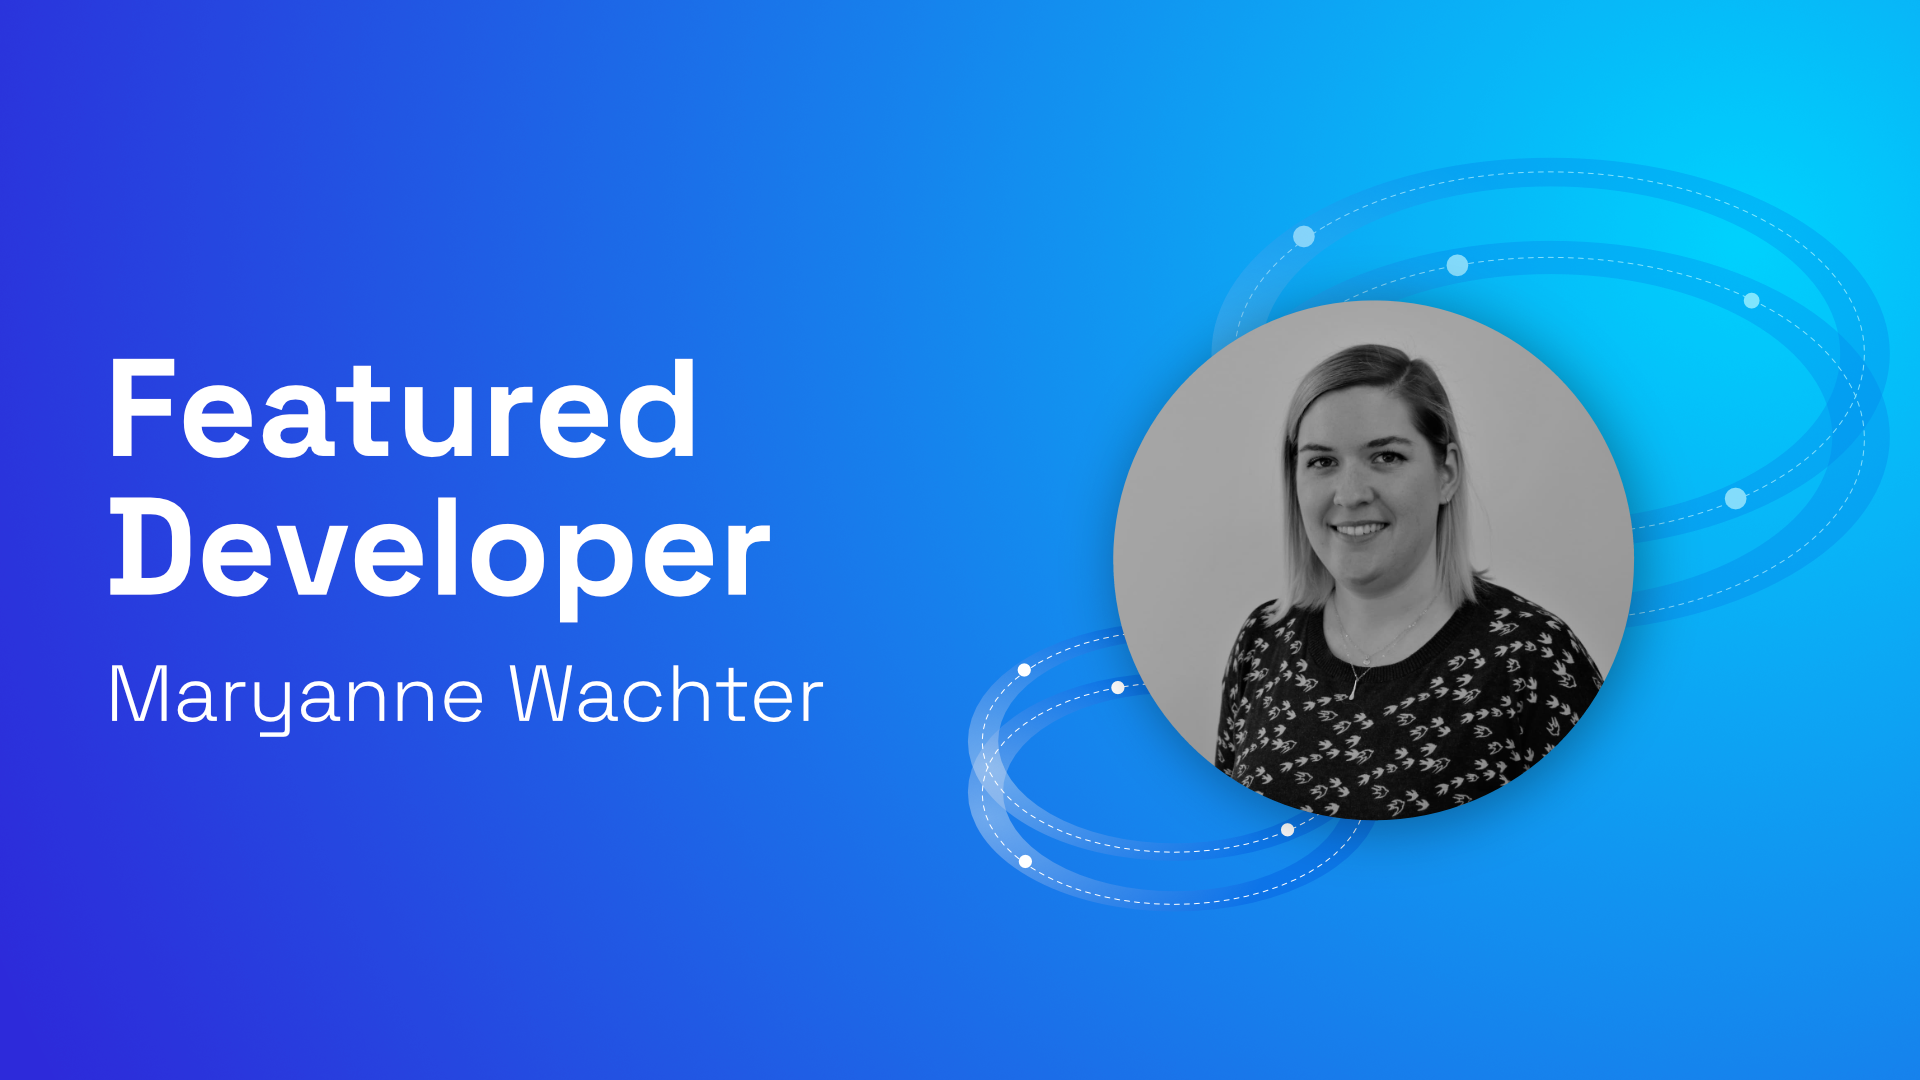 Featured Developer: Maryanne Wachter